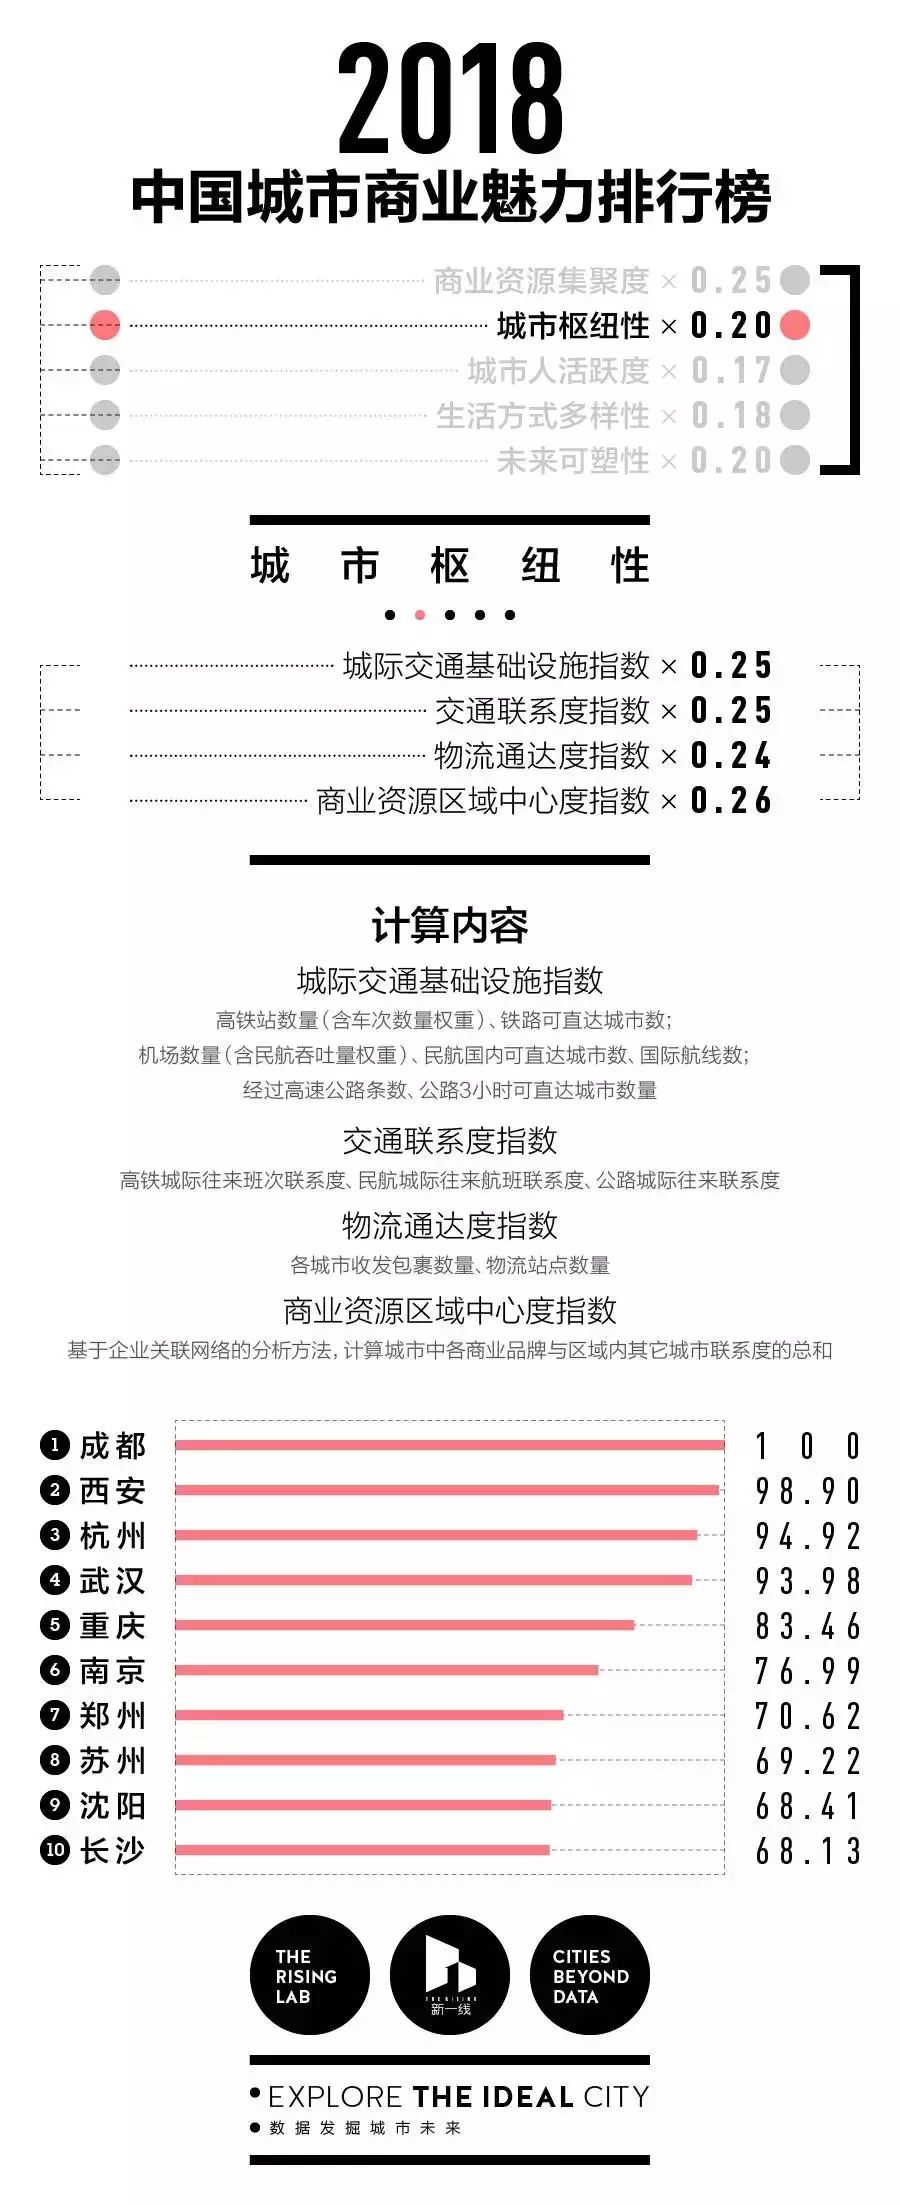 最新最全!2018年中国城市分级完整名单出炉!看